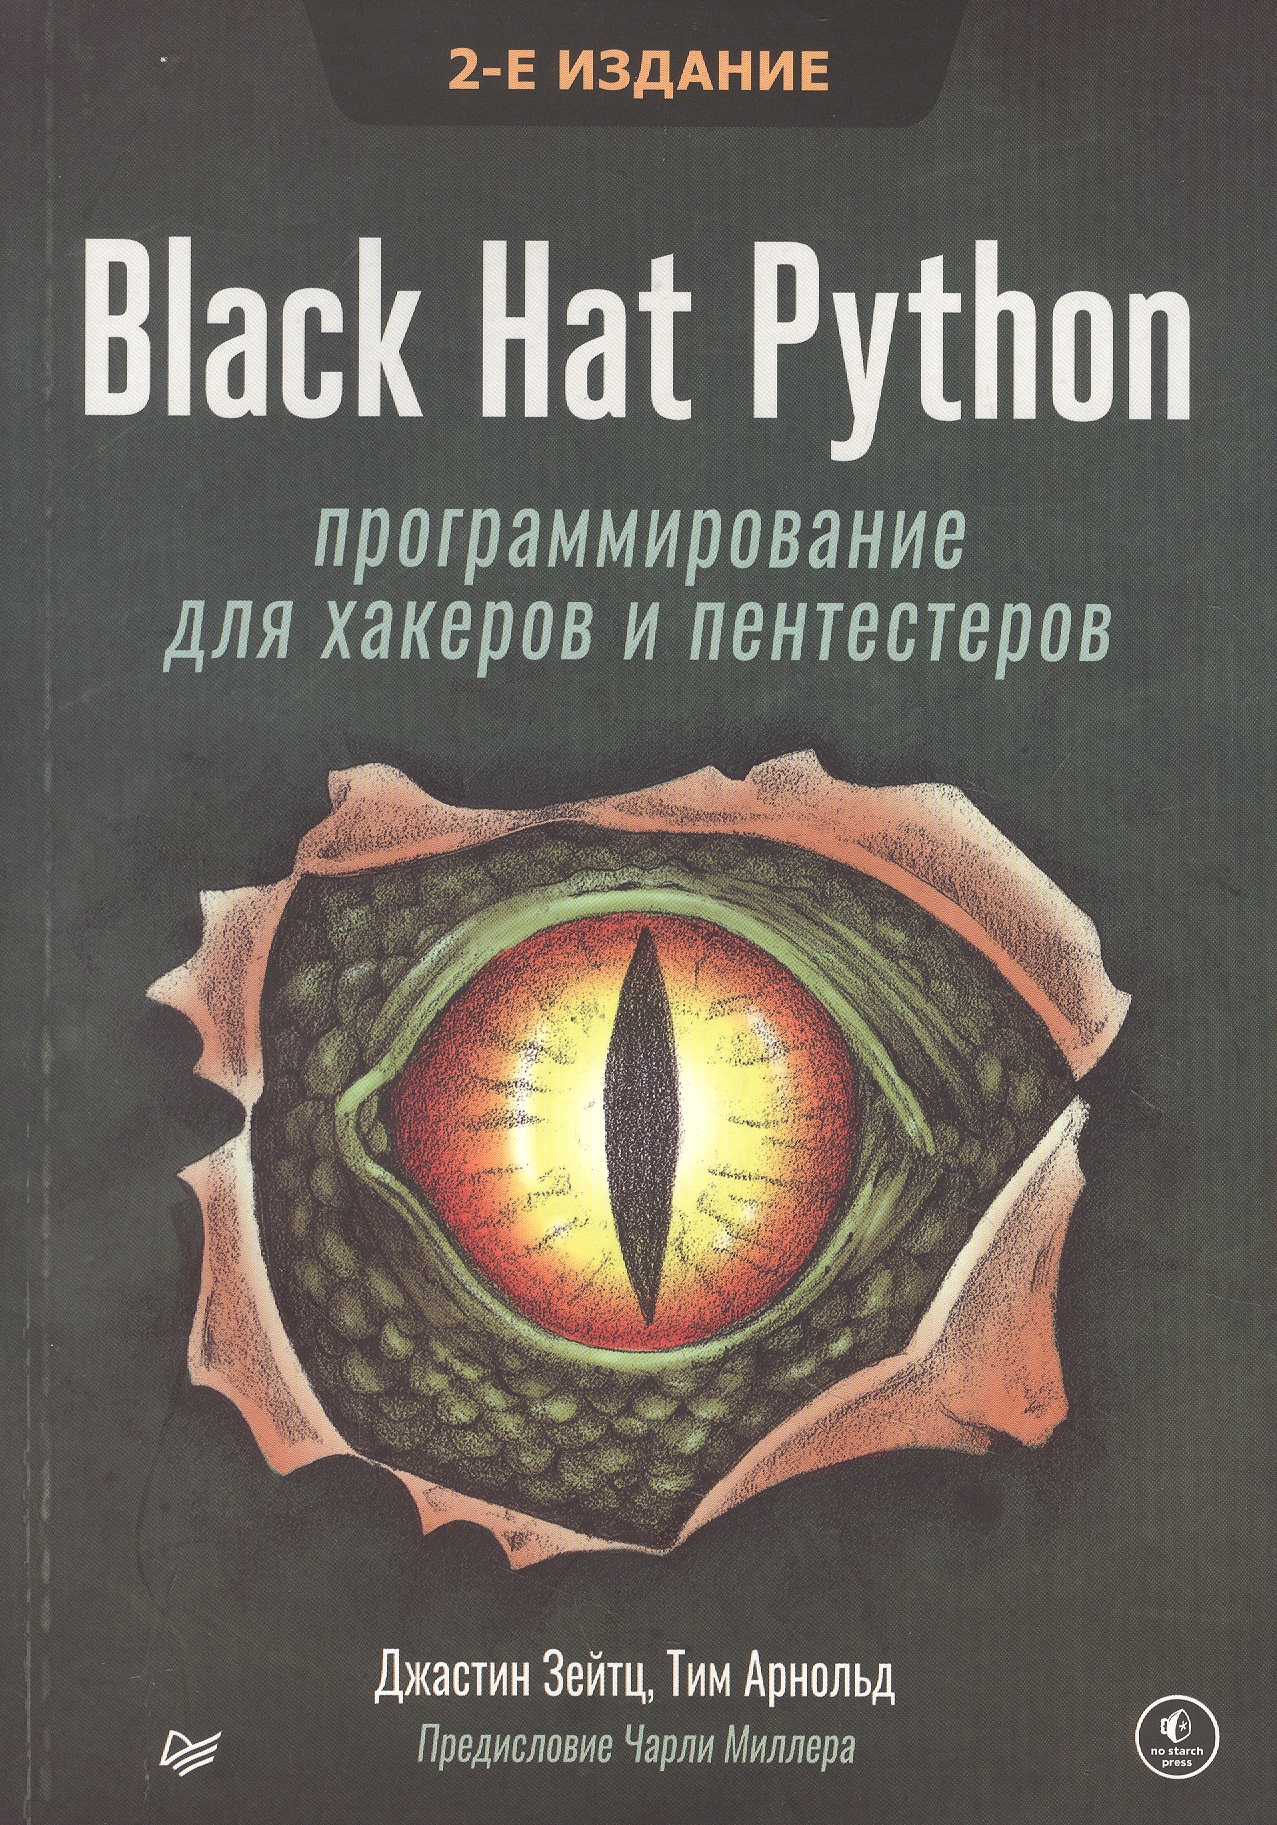 Зейтц Джастин Black Hat Python: программирование для хакеров и пентестеров, 2-е изд трек python для аналитиков данных